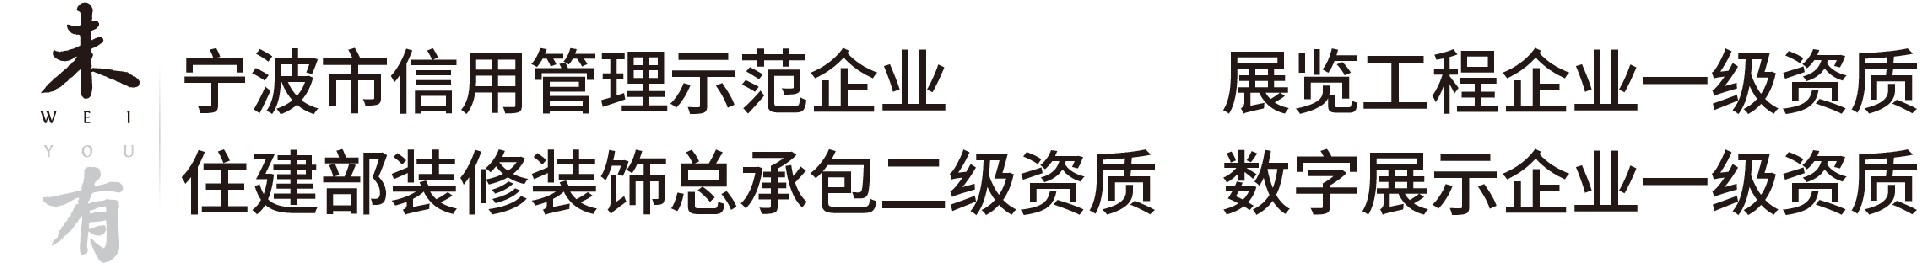 热烈祝贺公司被评为宁波市信用管理示范企业-新闻中心-浙江未有文化科技有限公司官网-浙江宁波-致力于数字技术在文化展示与传播领域的应用。